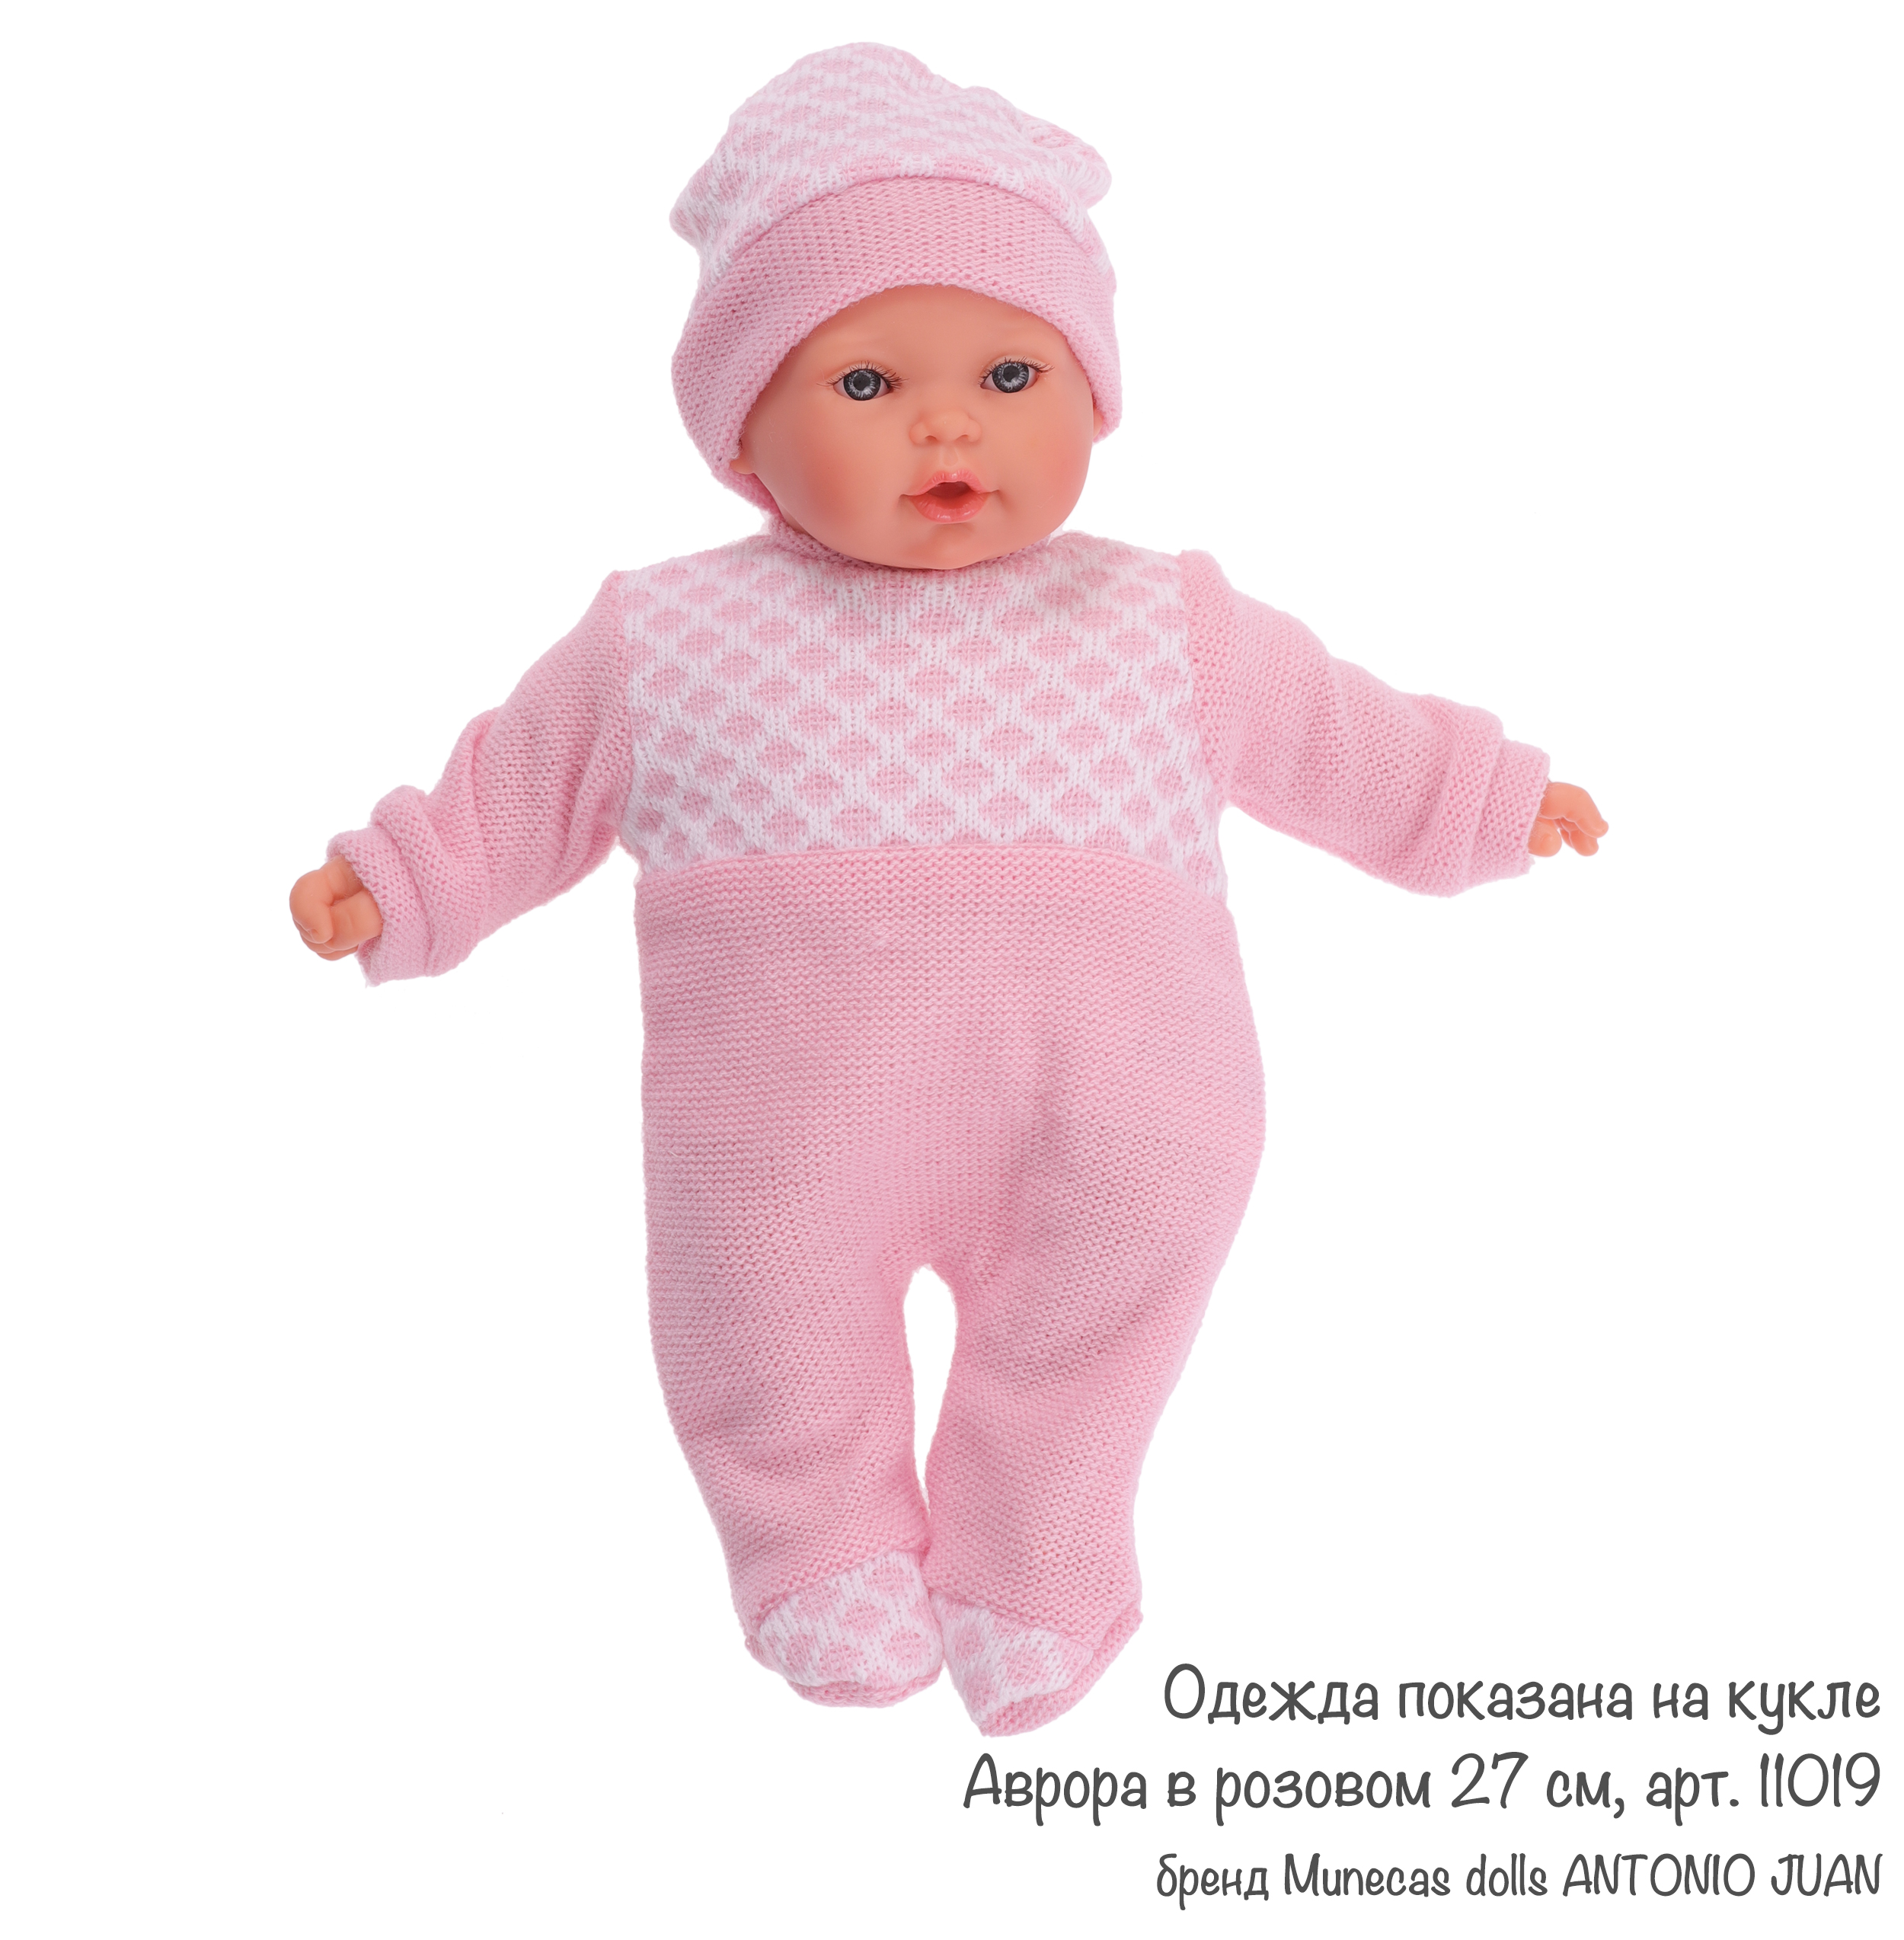 Одежда для кукол и пупсов 25-29 см конверт розовый боди-комбинезон шапка  